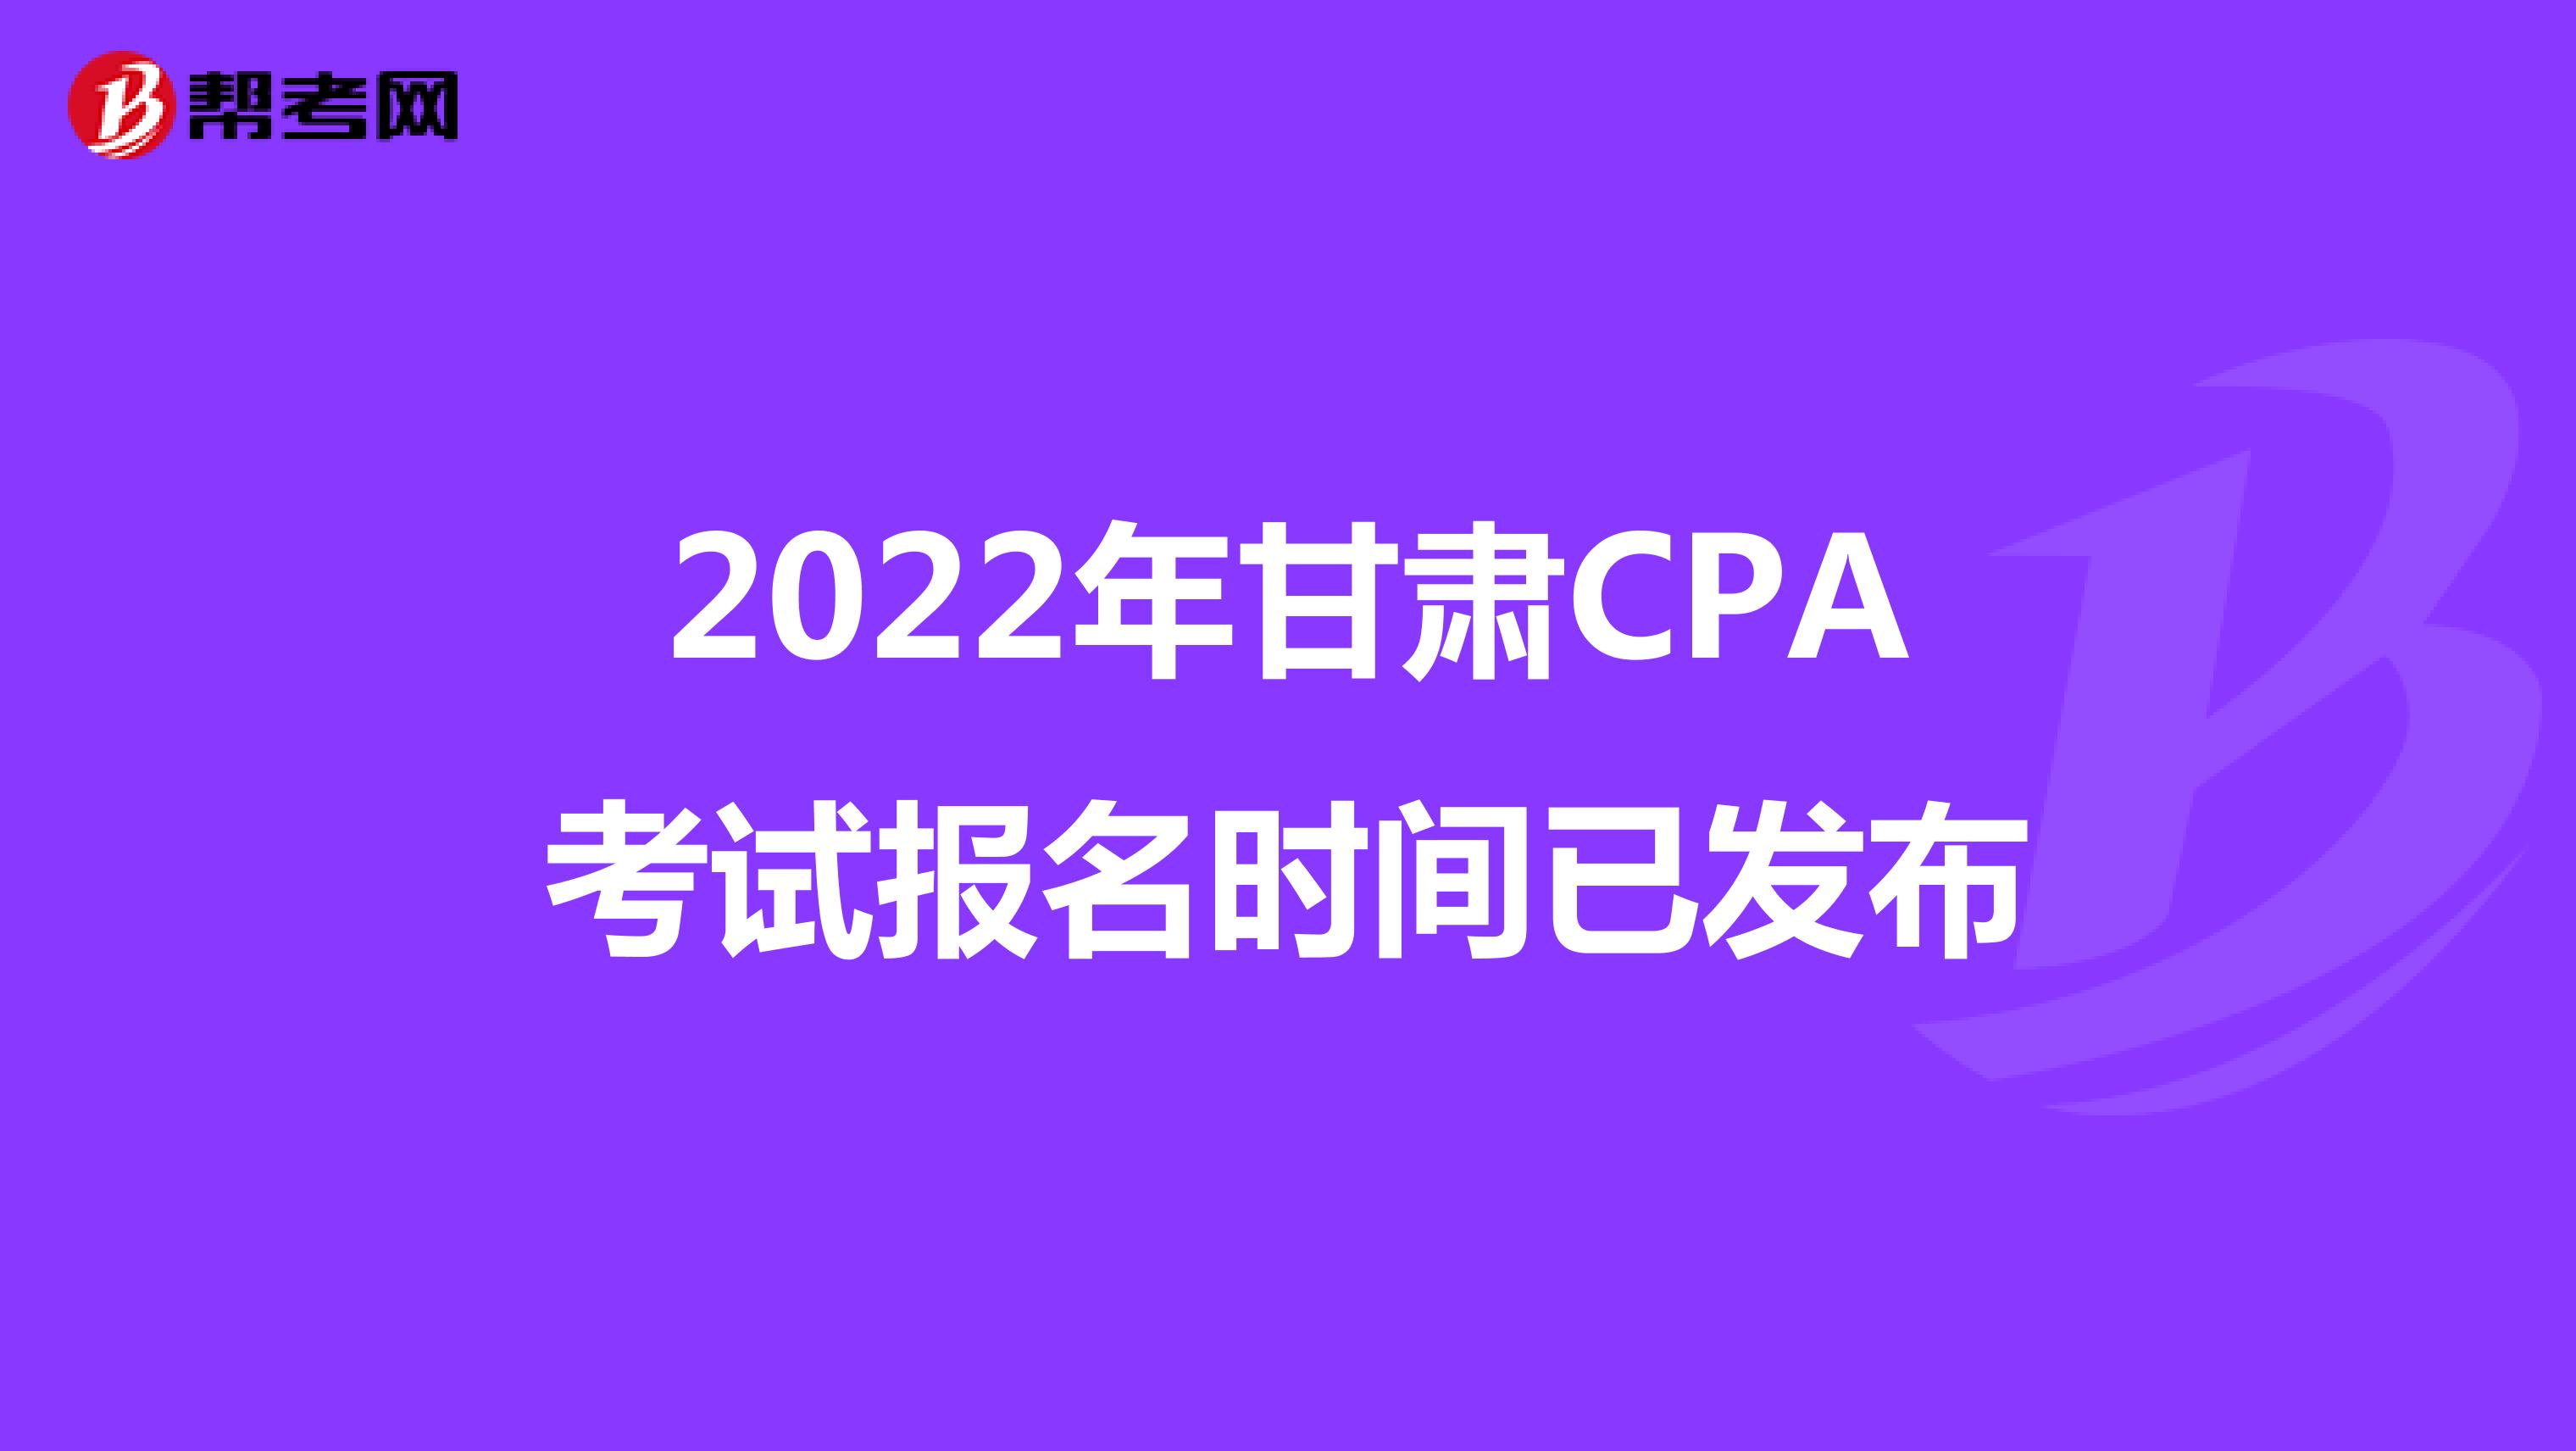 2022年甘肅CPA考試報名時間已發布